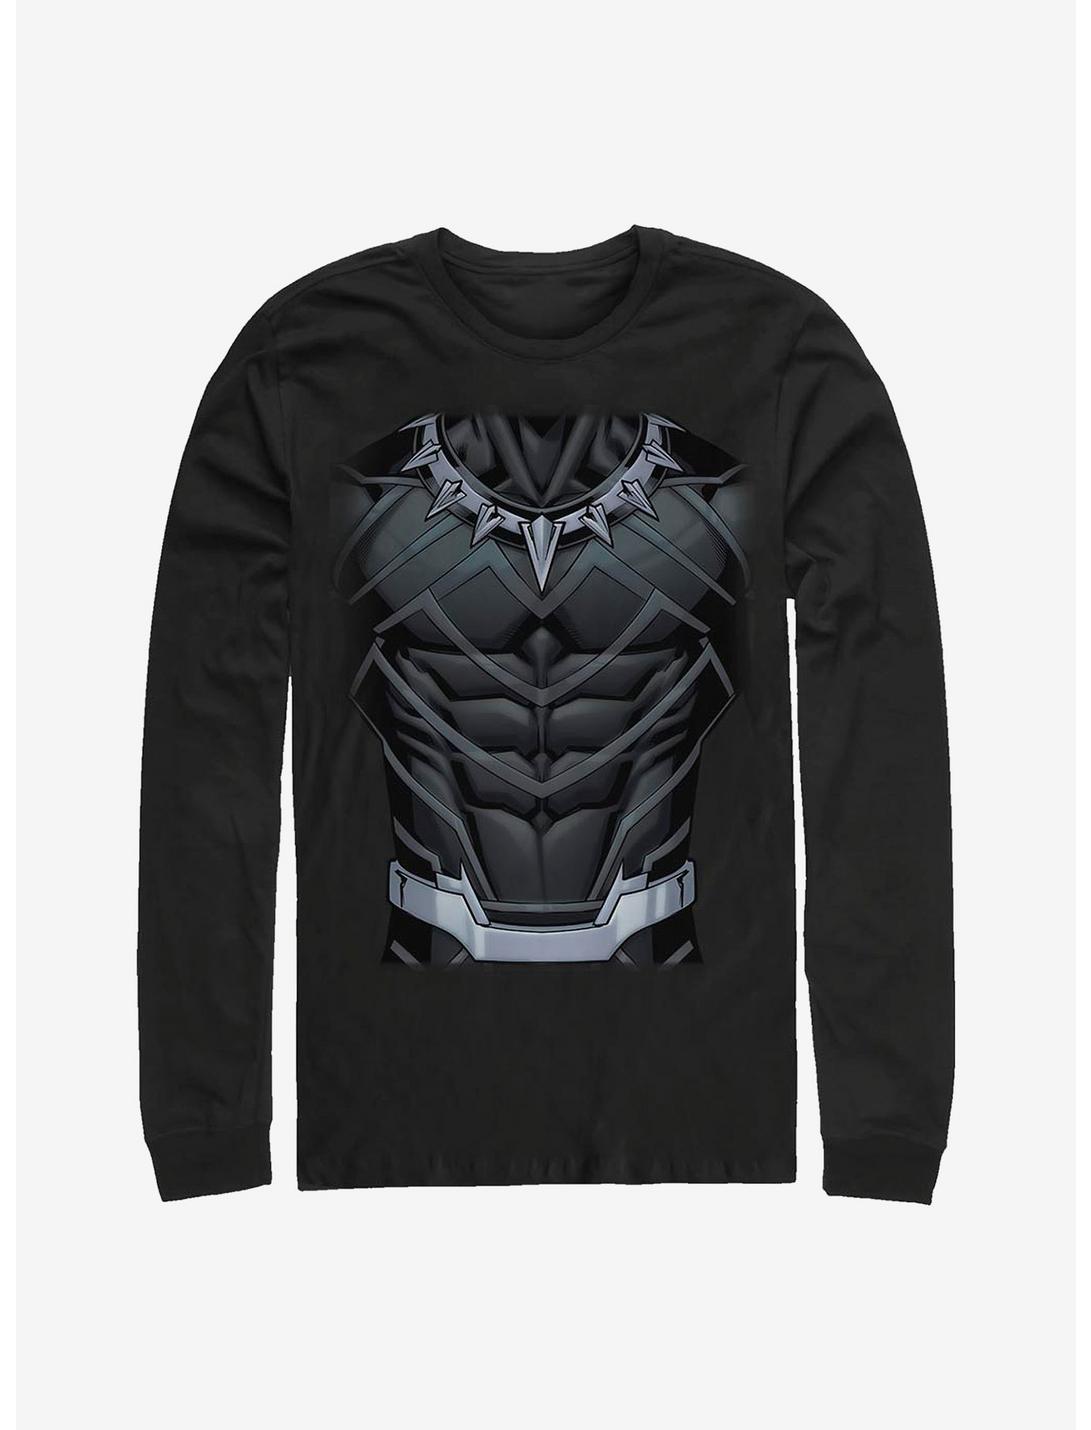 Marvel Black Panther Suit Long-Sleeve T-Shirt, BLACK, hi-res